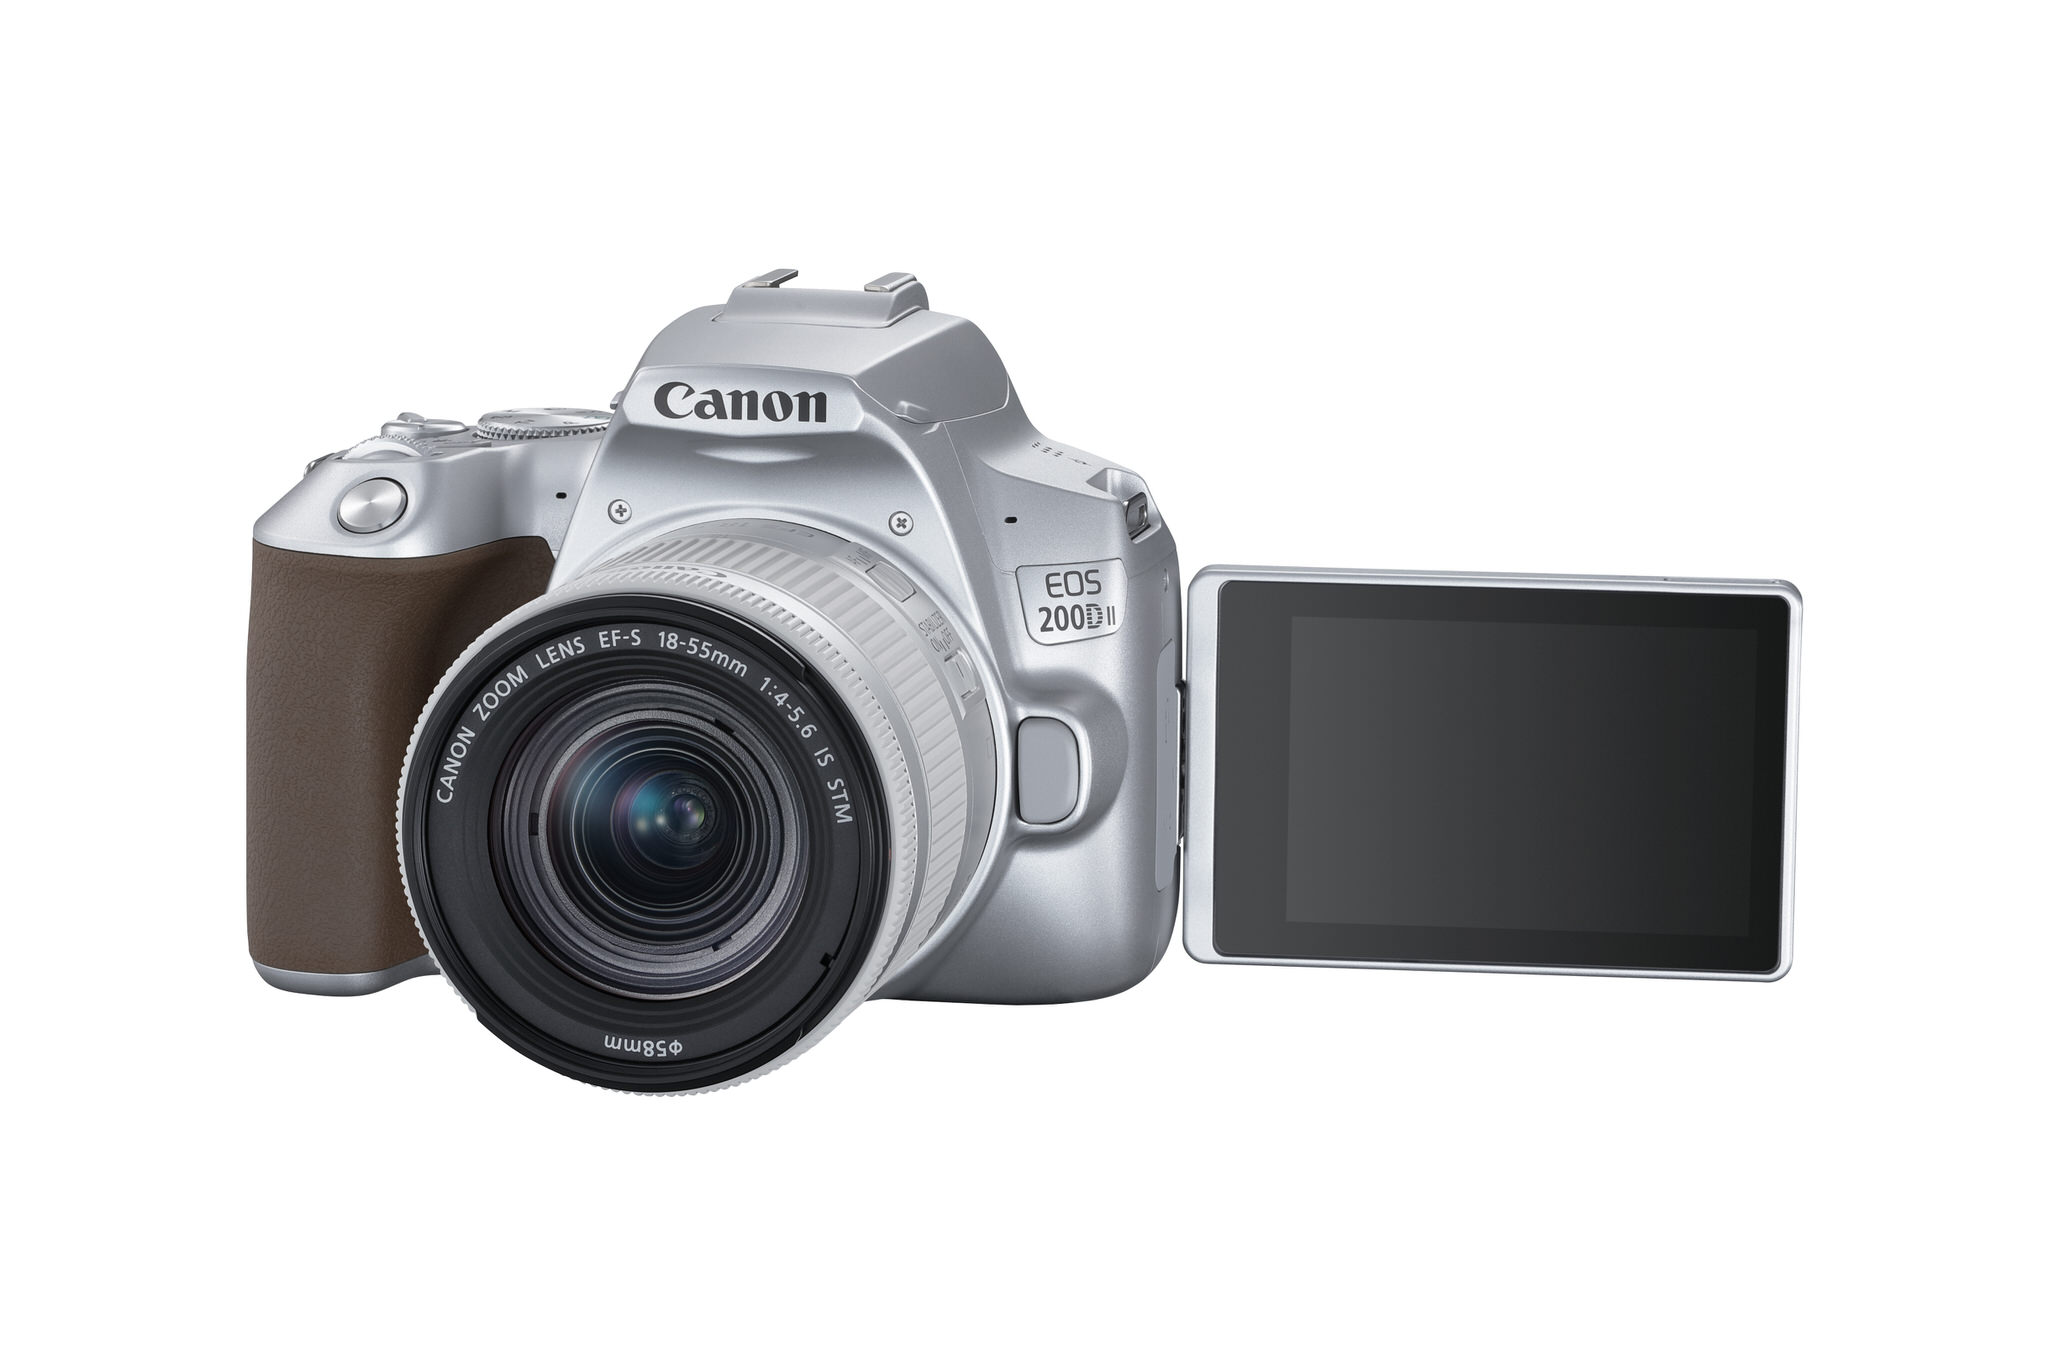 Canon ra mắt EOS 200D II, máy ảnh DSLR nhỏ gọn cho người mới, giá 16,5 triệu